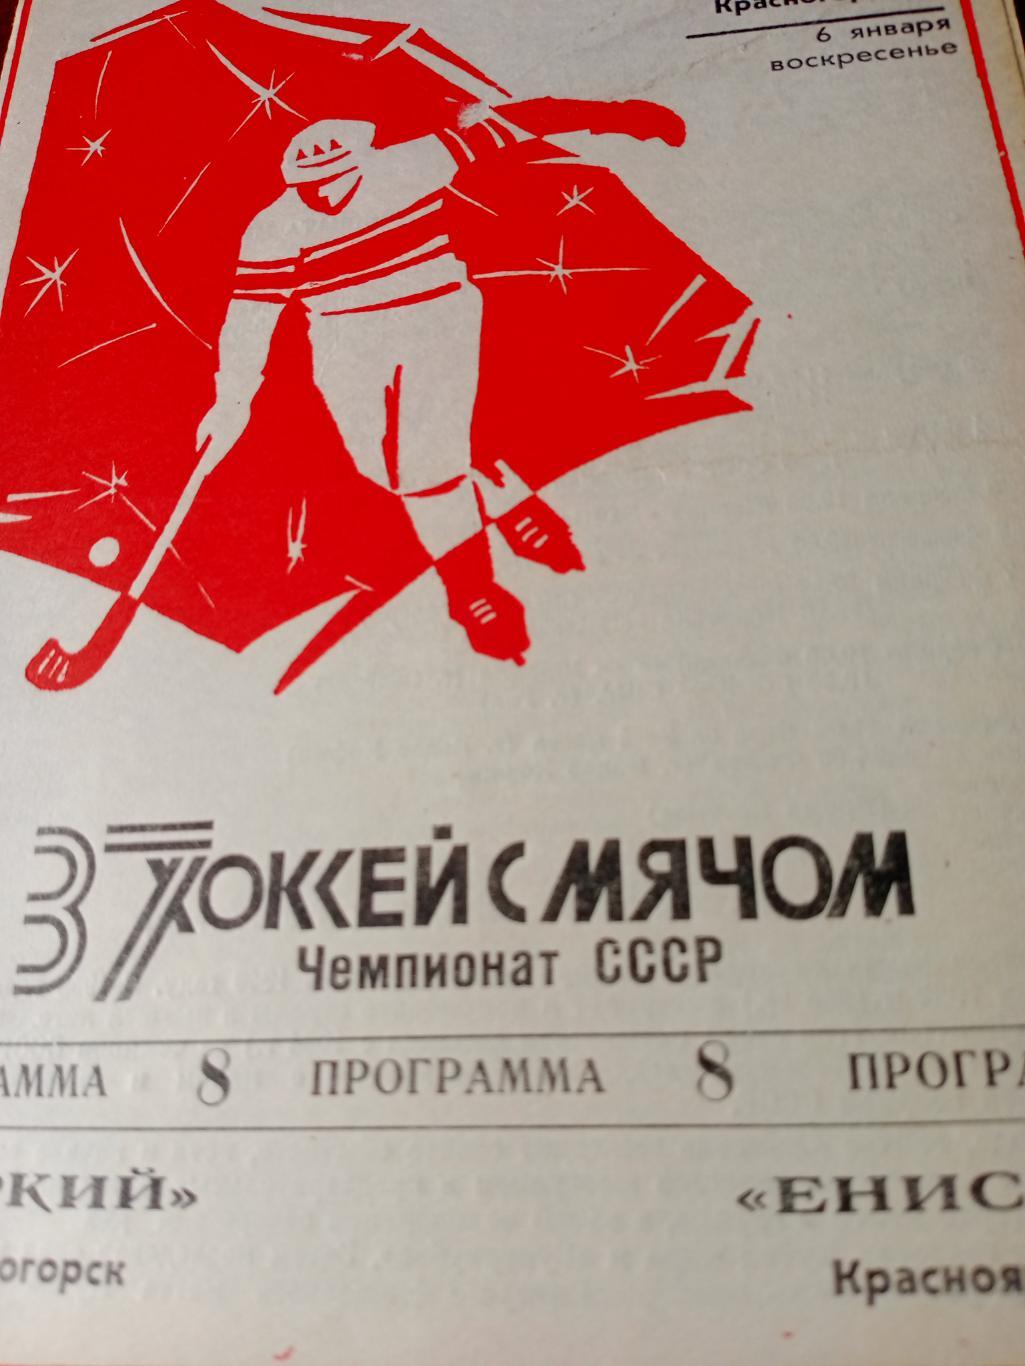 Зоркий Красногорск - Енисей Красноярск. 6 января 1985 год